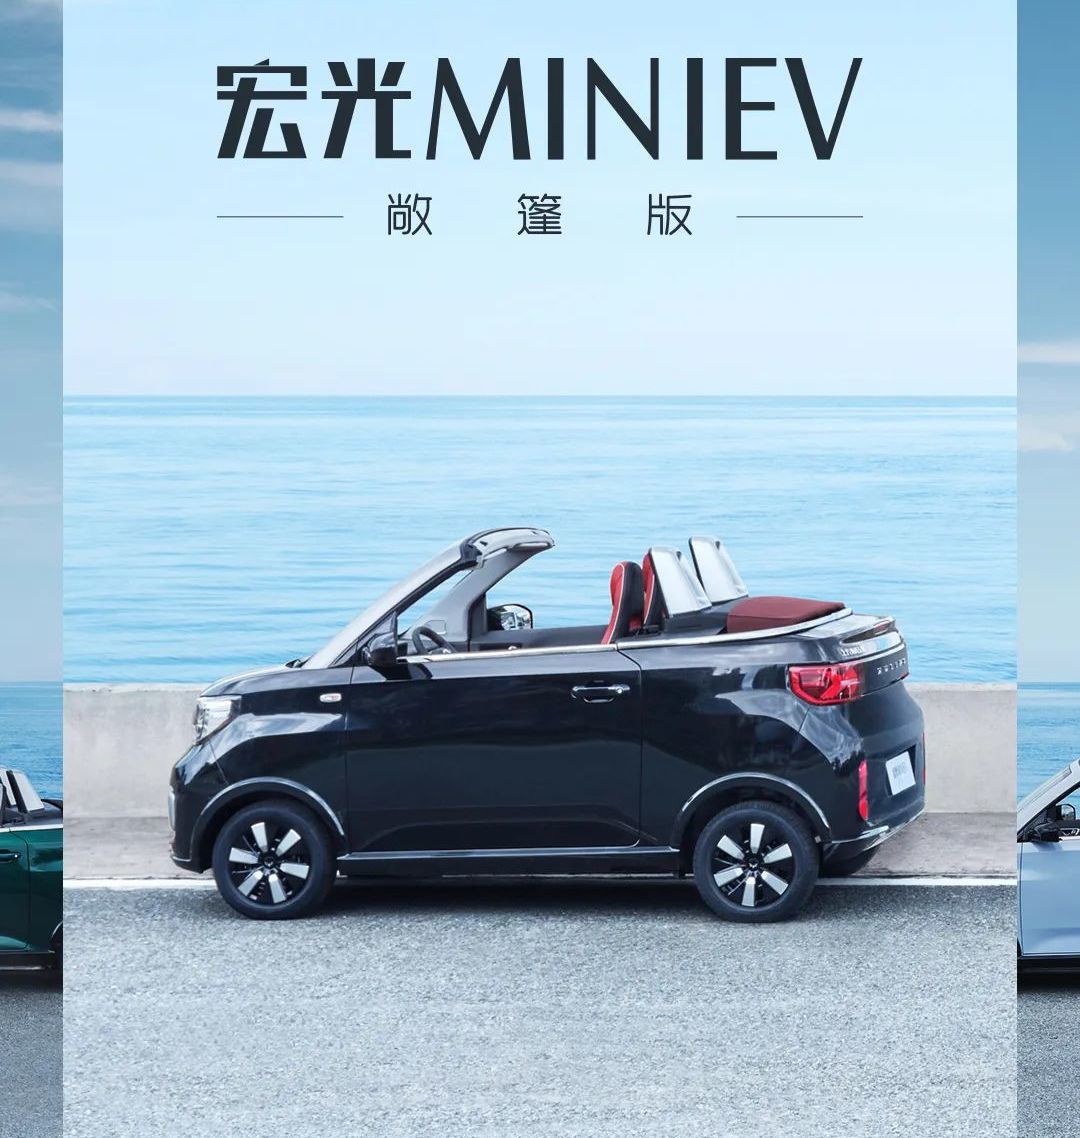 宏光MINIEV家族3款新车将于9月25日正式亮相